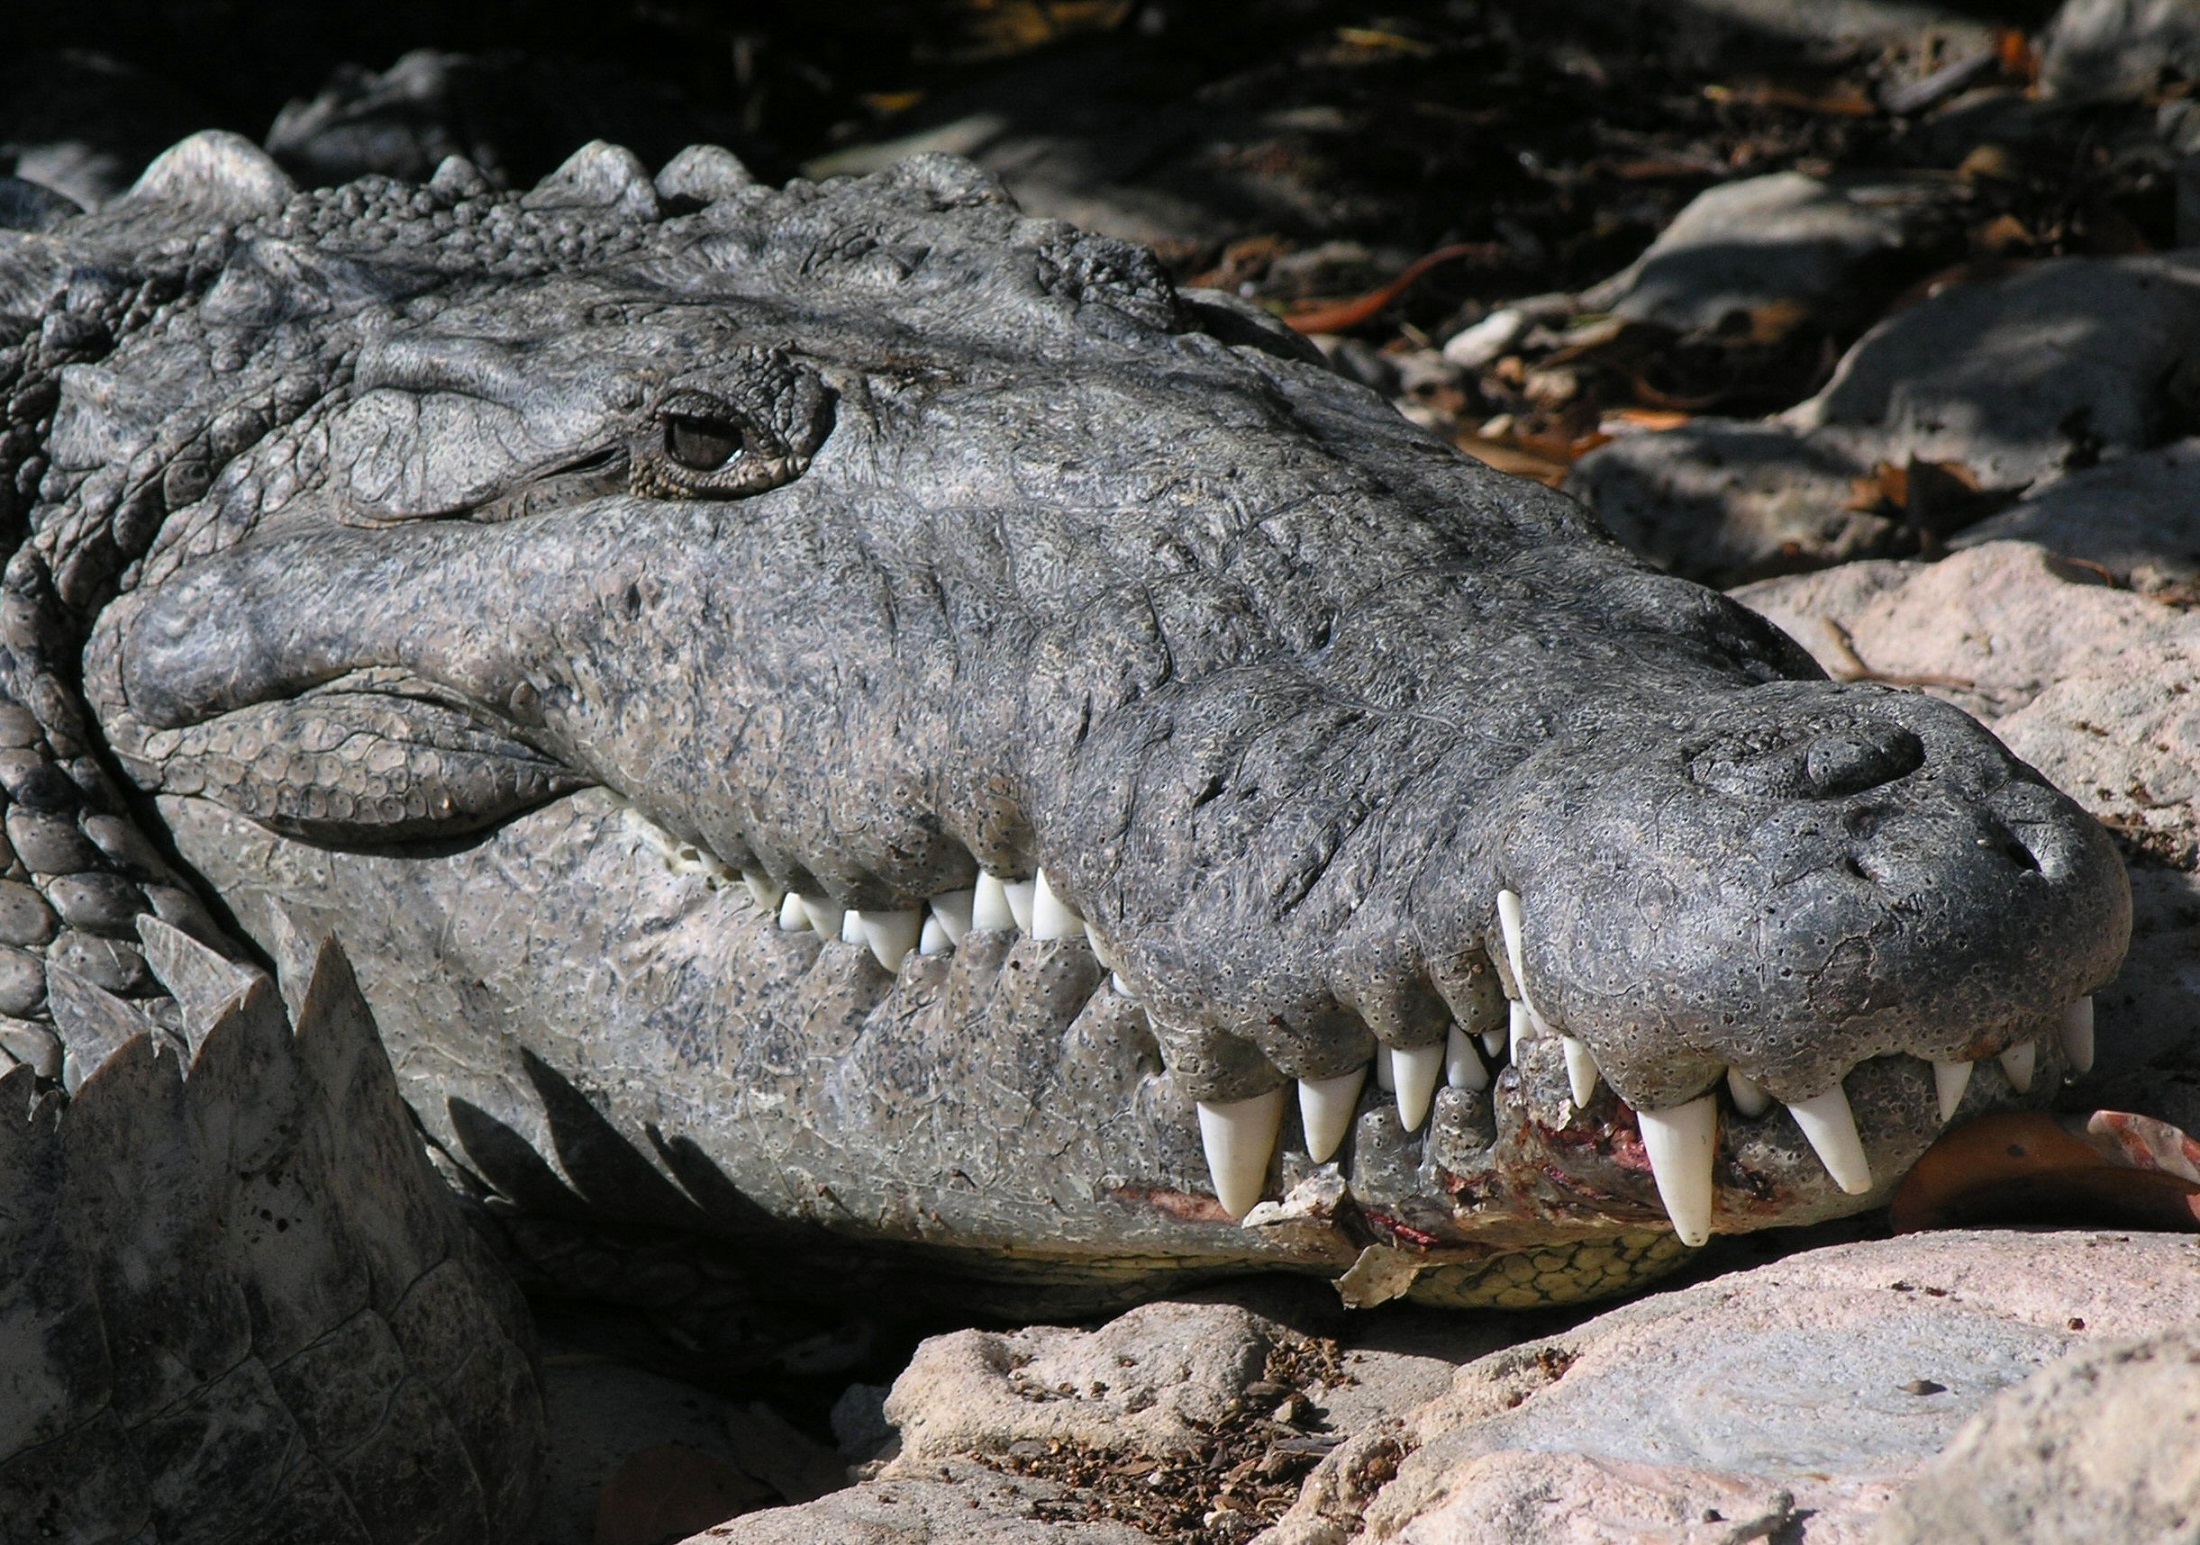 Saltwater croc photo